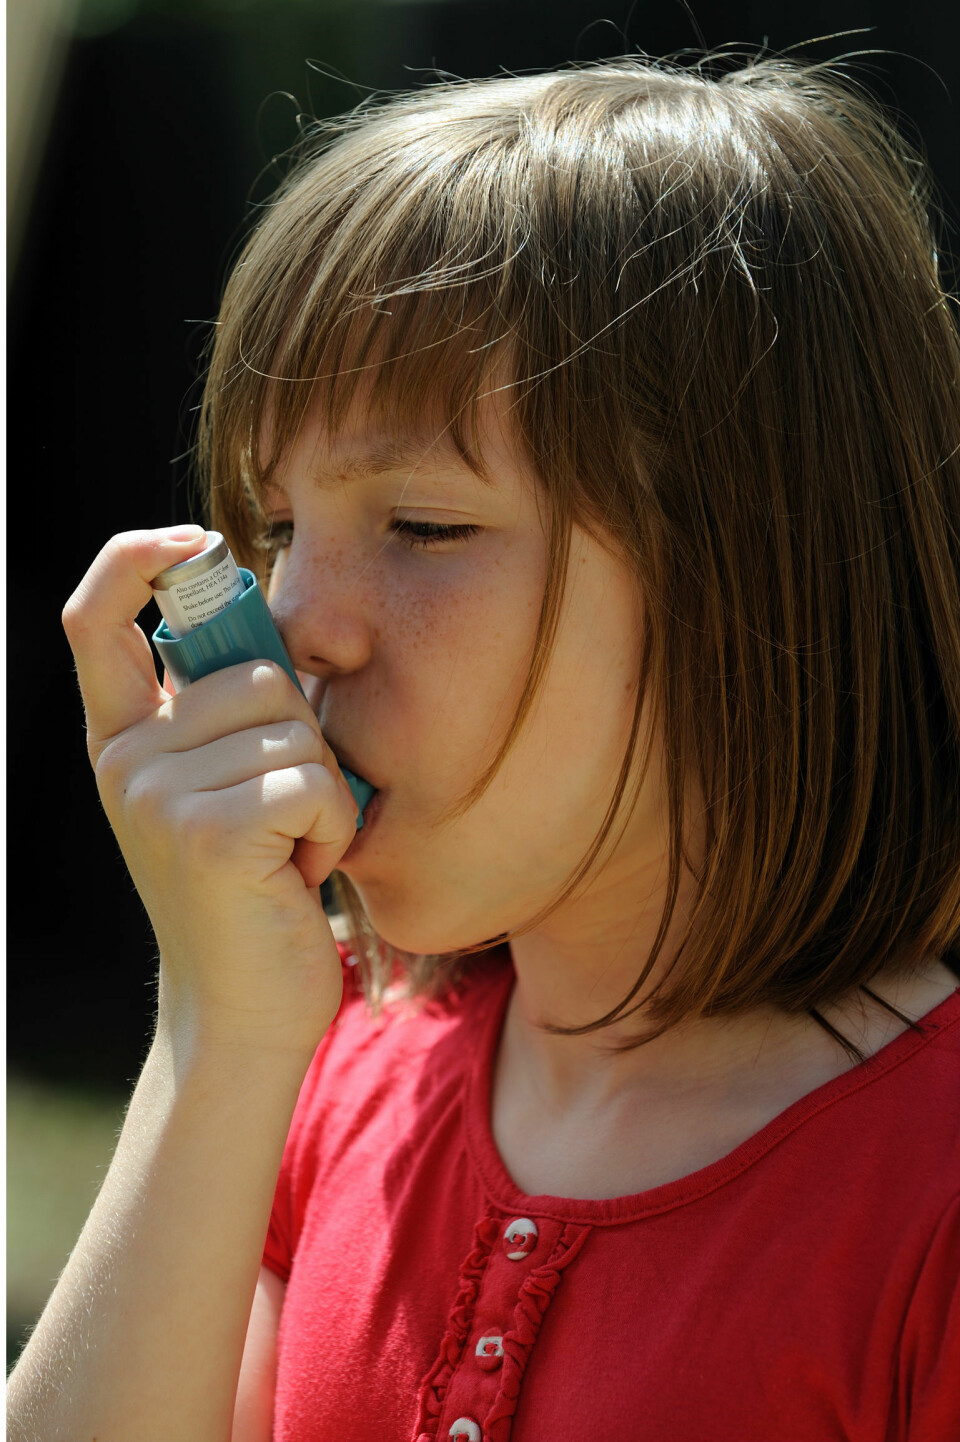 Antibiotika er ikke i seg selv årsaken til utvikling av astma hos barnet. Det er snarere årsaken til morens antibiotikainntak som ligger bak, viser ny forskning. (Foto: Microstock)